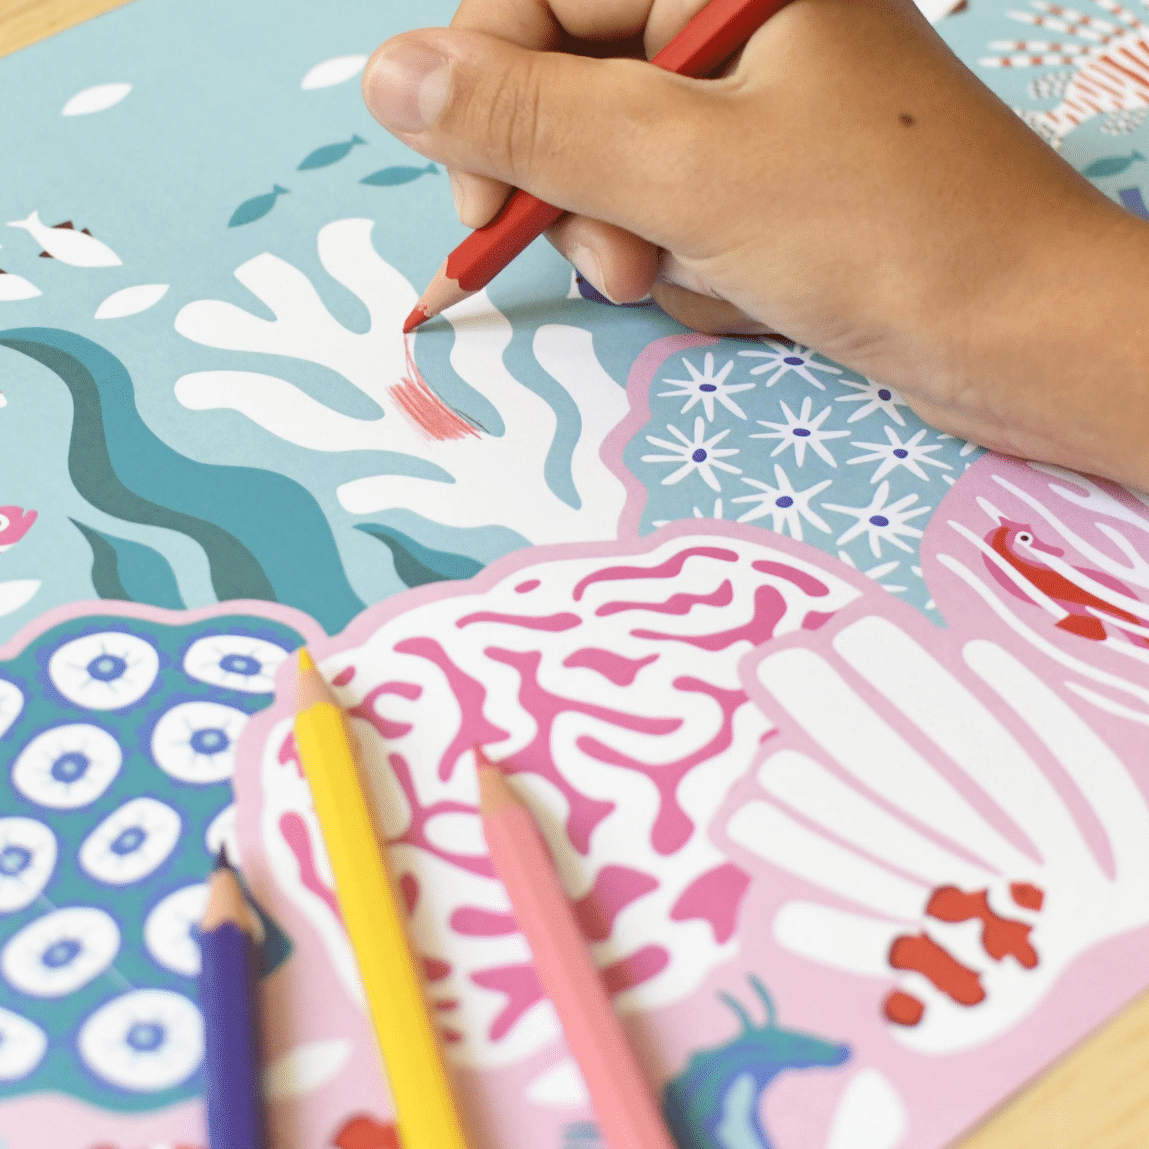 poppik recif coralien coloriage géant enfant dessin créativité